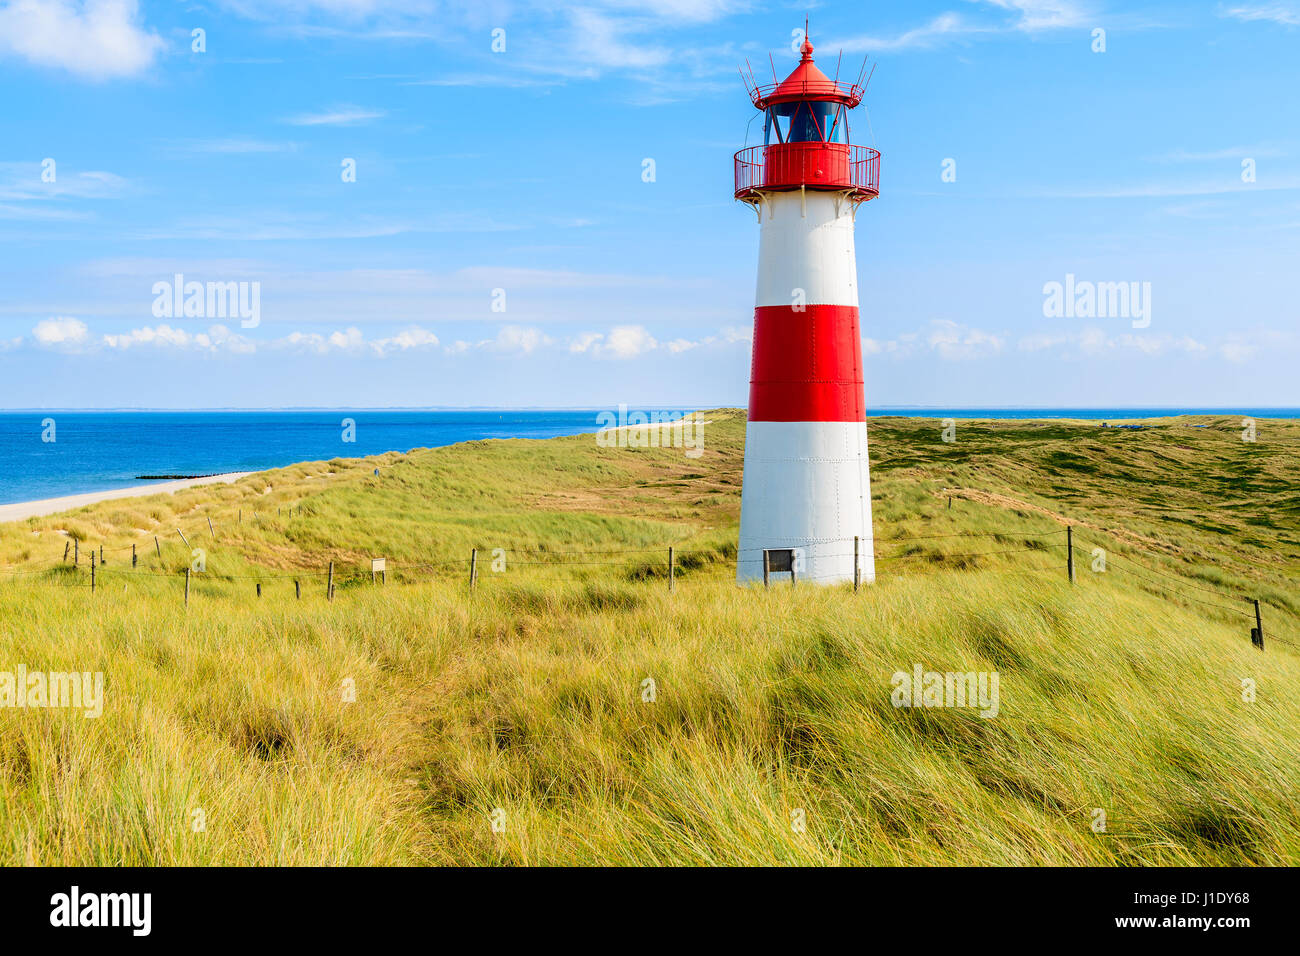 Ellenbogen-Leuchtturm auf Sanddüne und Aussicht auf den Strand auf der nördlichen Küste von Sylt Insel, Deutschland Stockfoto